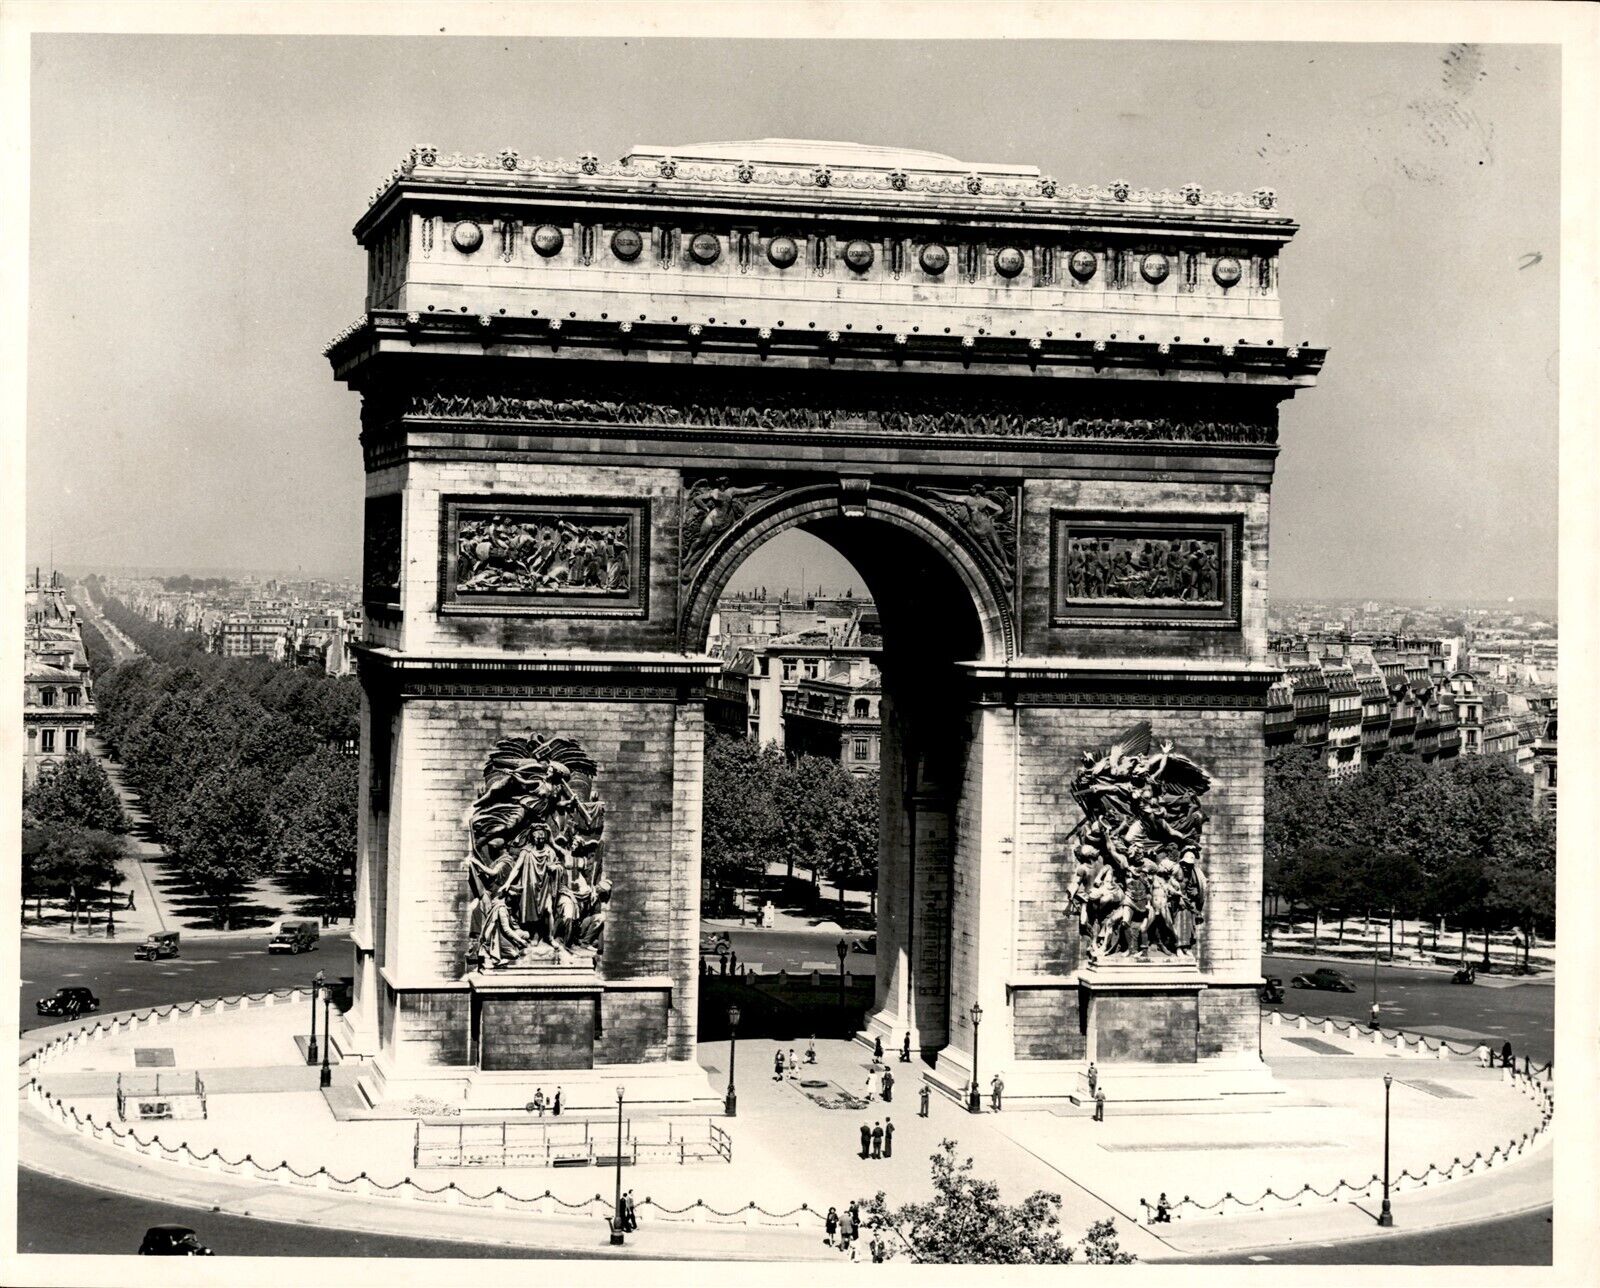 LD279 Original Photo ARC DE TRIOMPHE MONUMENT IN PARIS FRANCE CHAMPS-ELYSEES